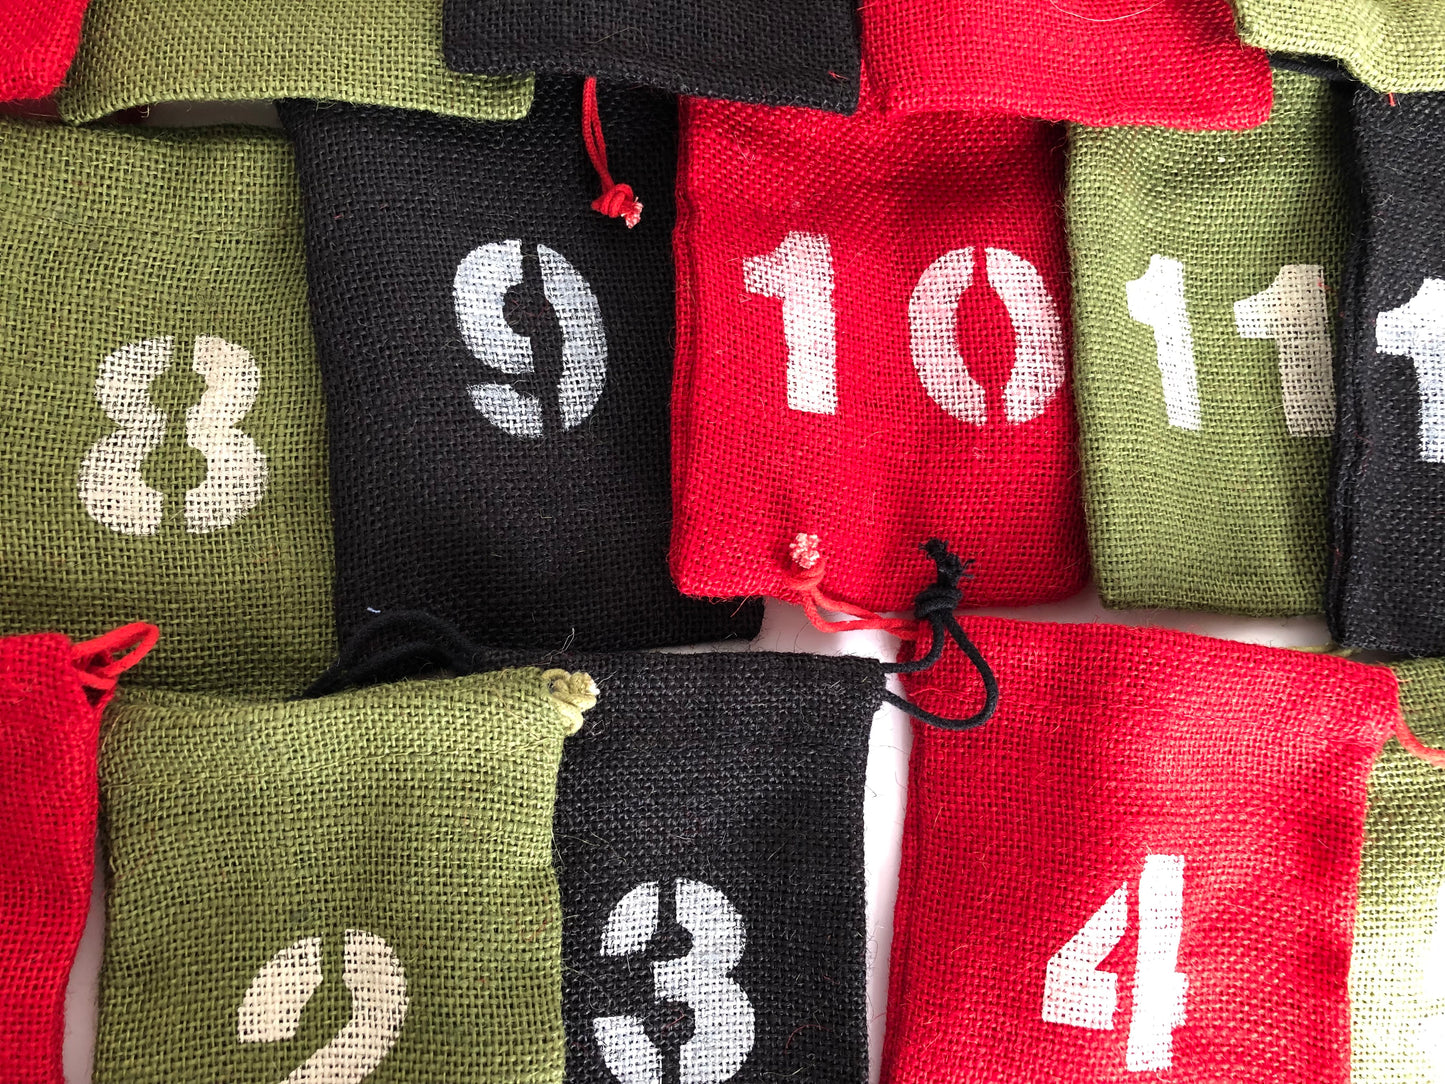 Rustic Burlap Advent Calendar Gift Bags Set of 24